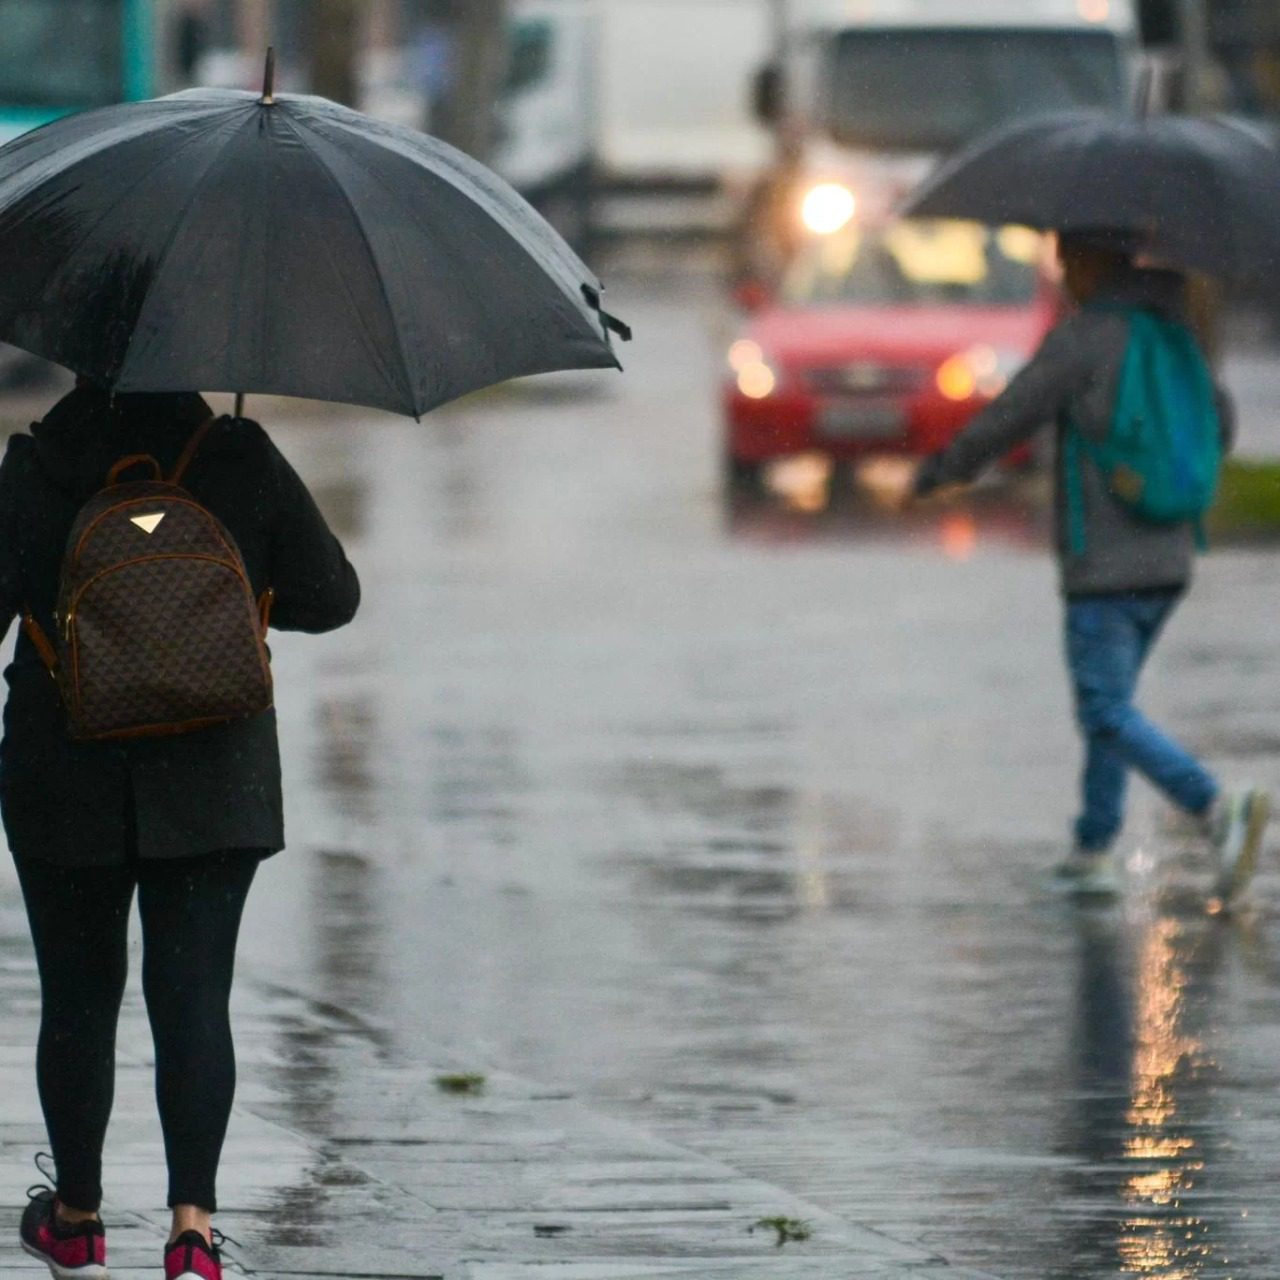 Inmet emite alertas de chuvas e ventos intensos para mais de 50 cidades do ES